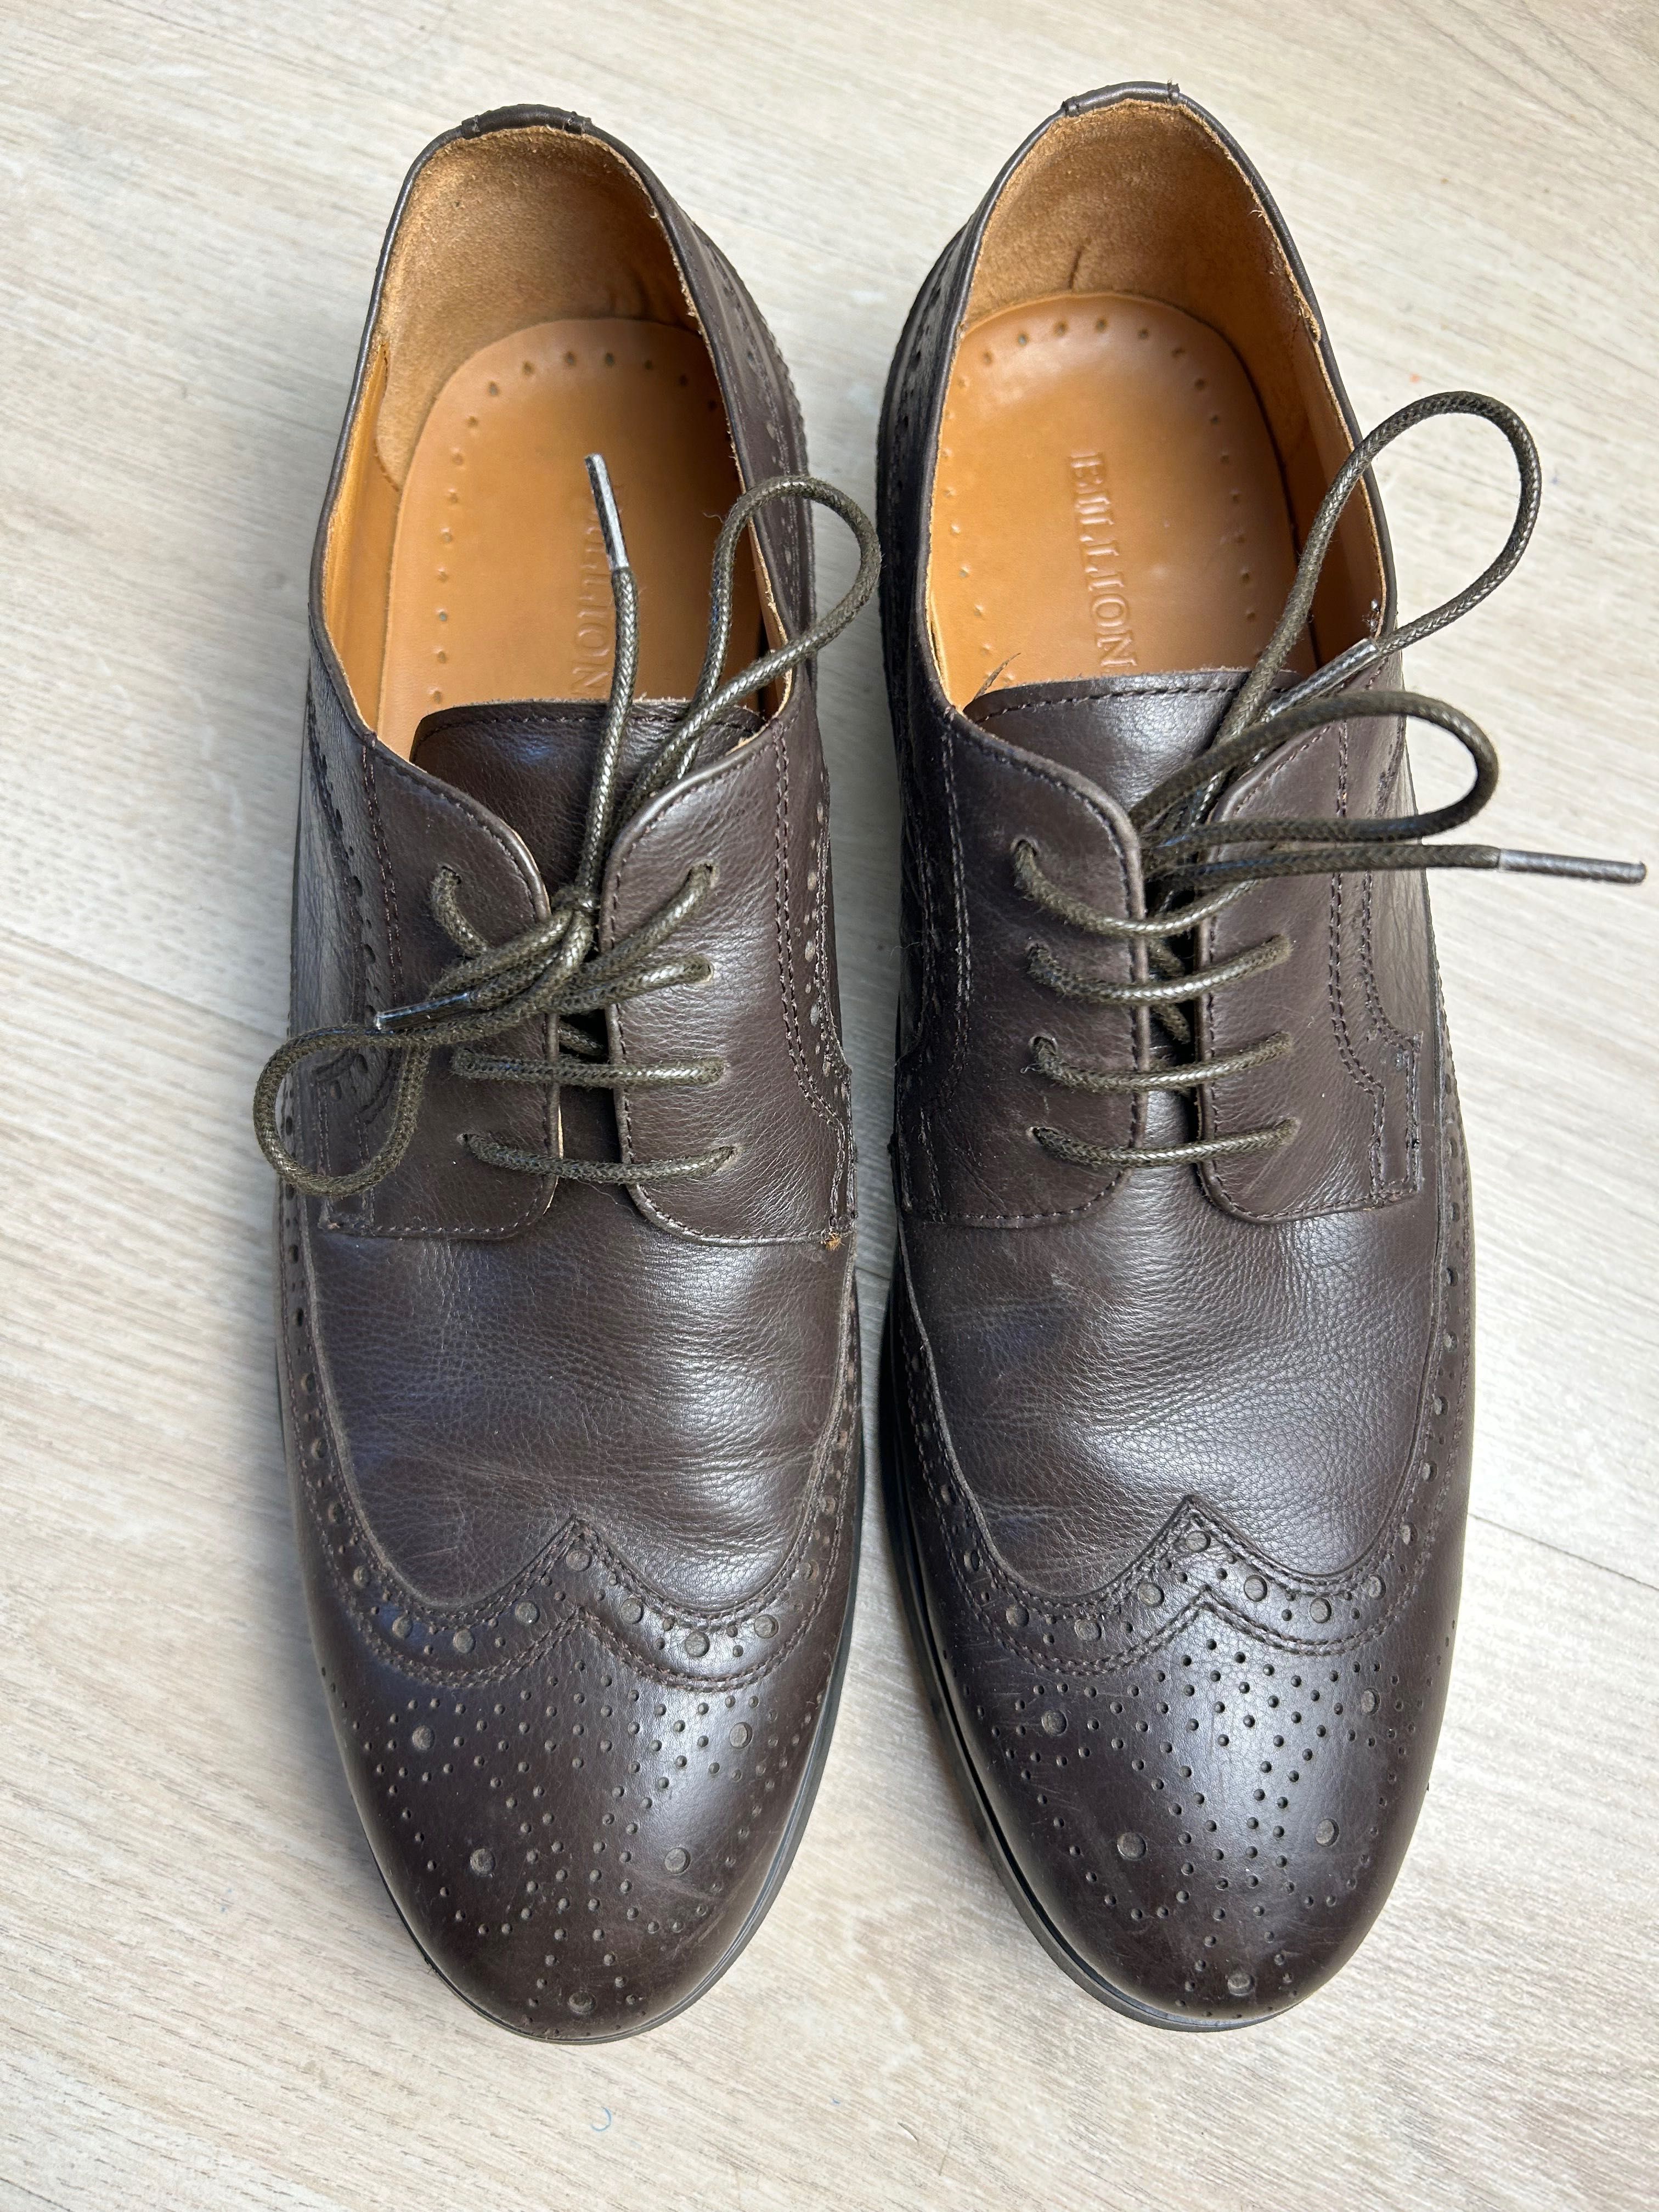 Туфли мужские, кожанные цвет темно-коричневый